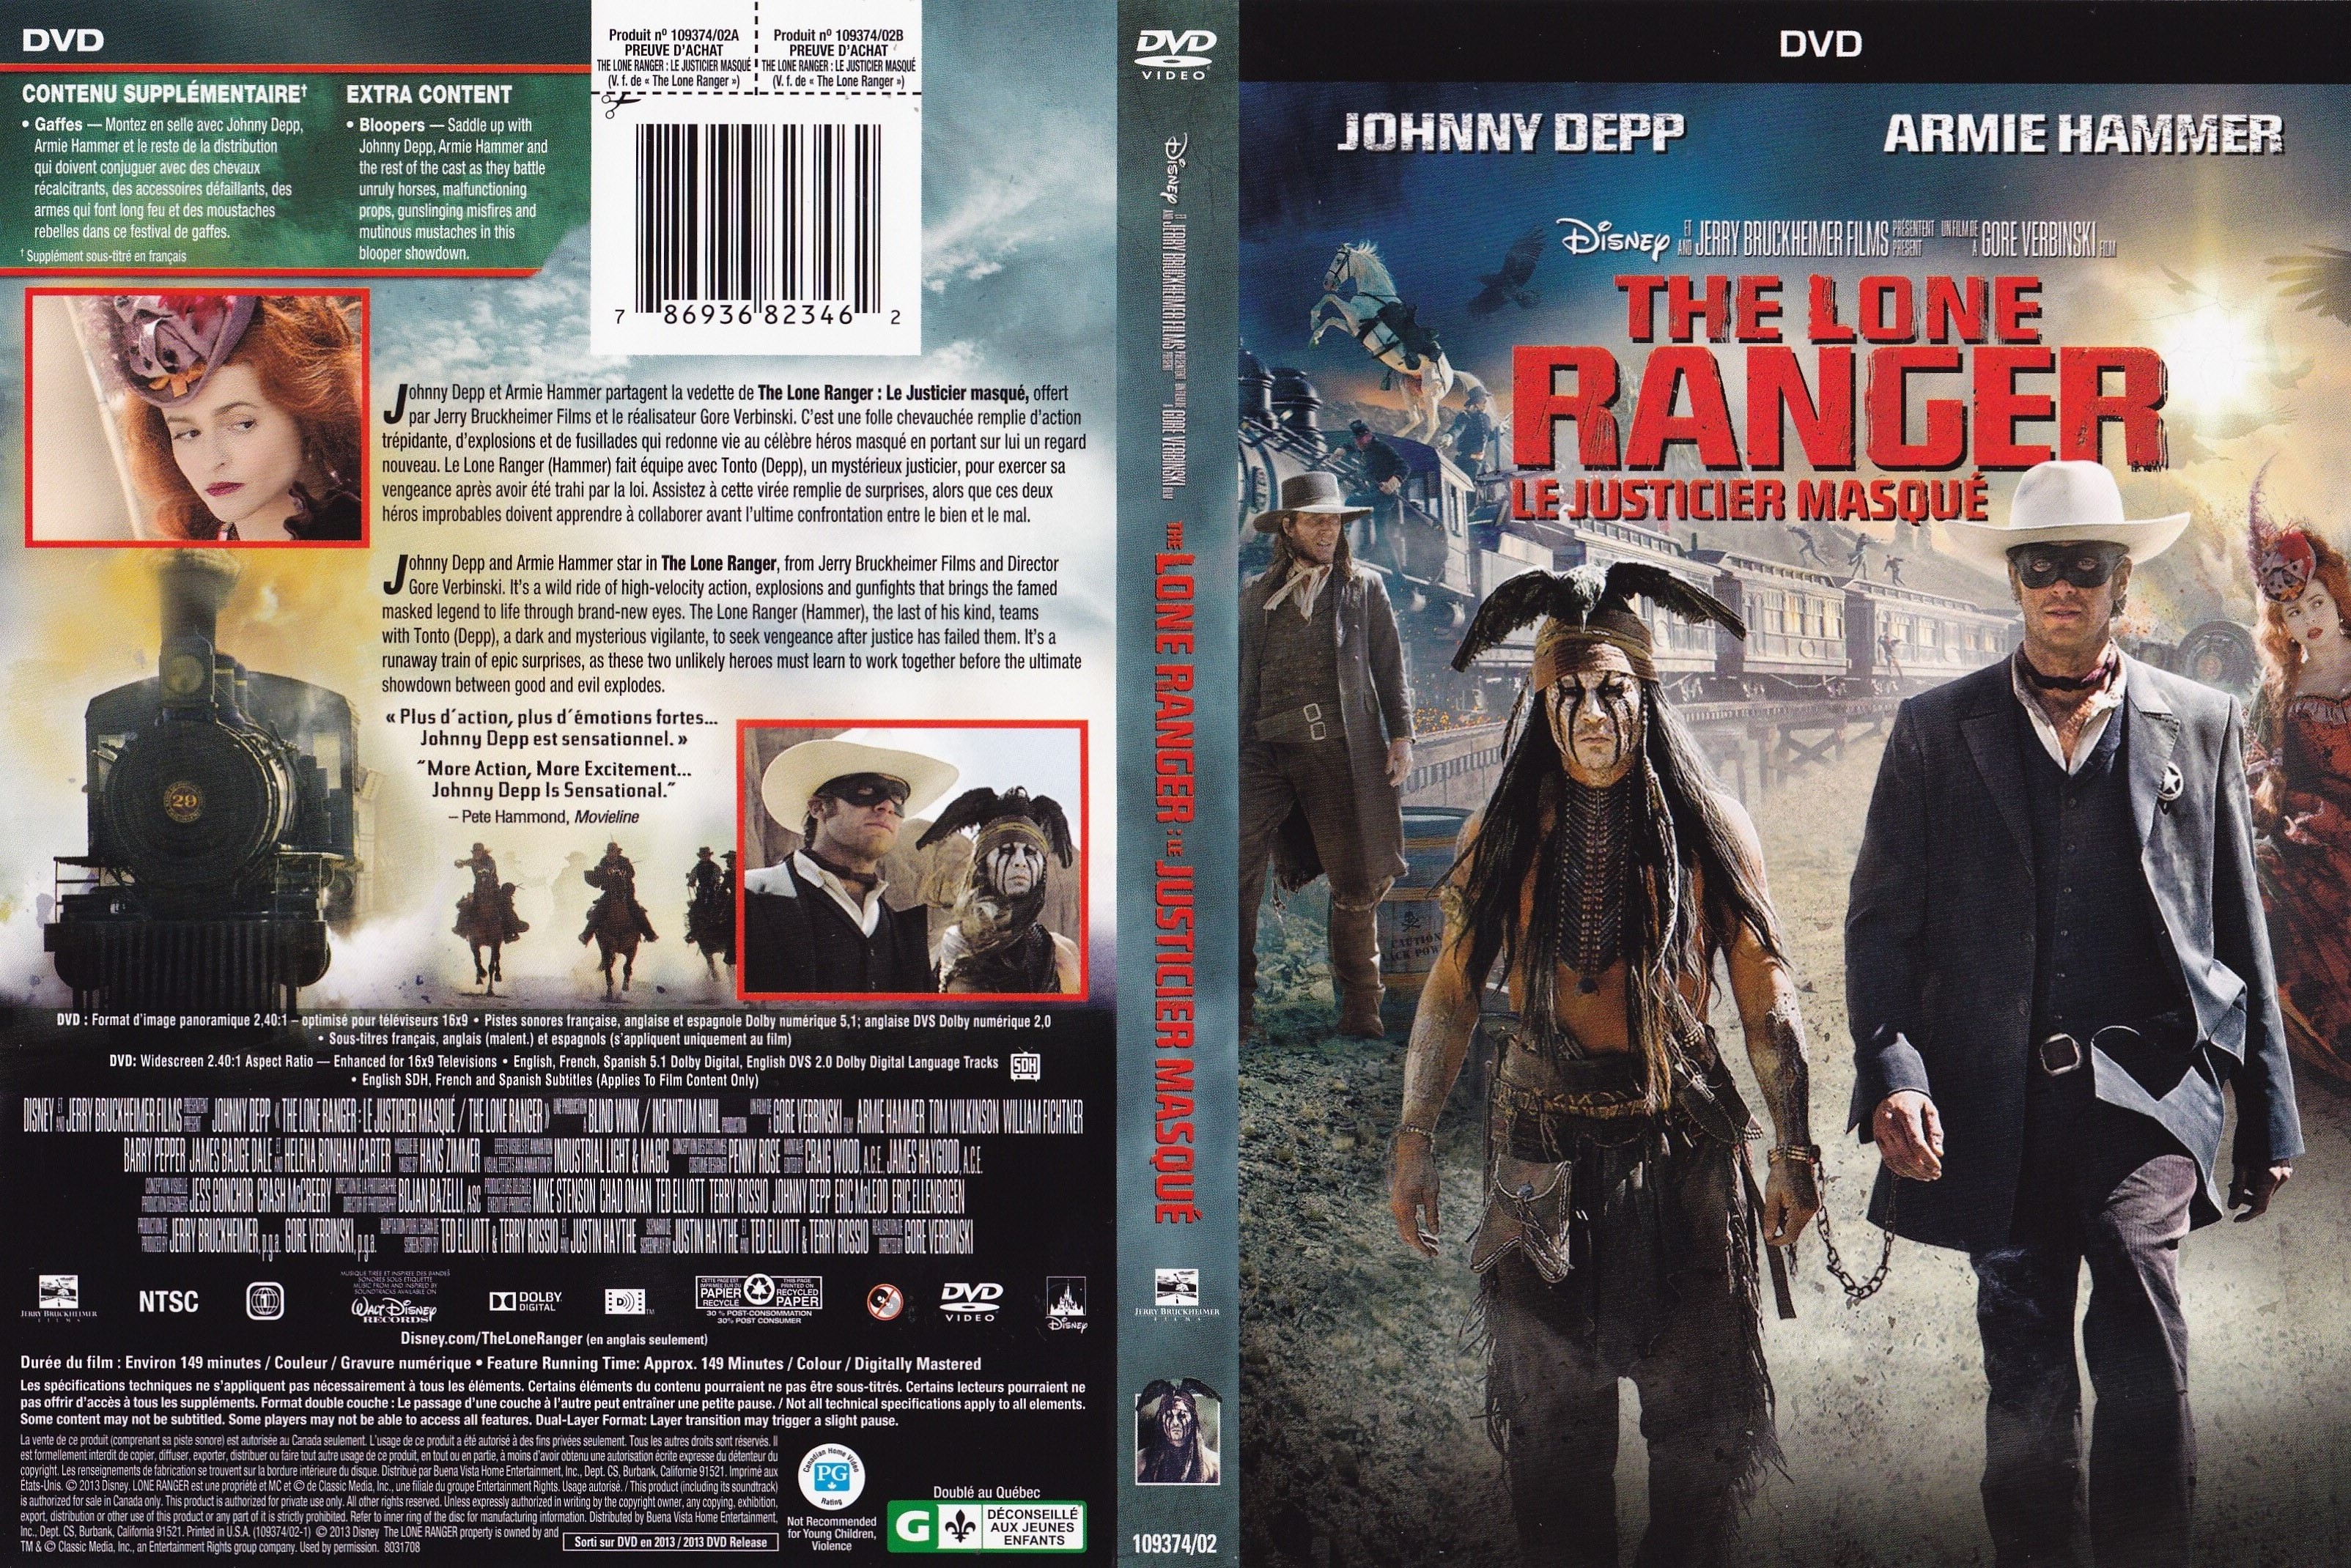 Jaquette DVD Lone ranger - Le justicier masqu (Canadienne)